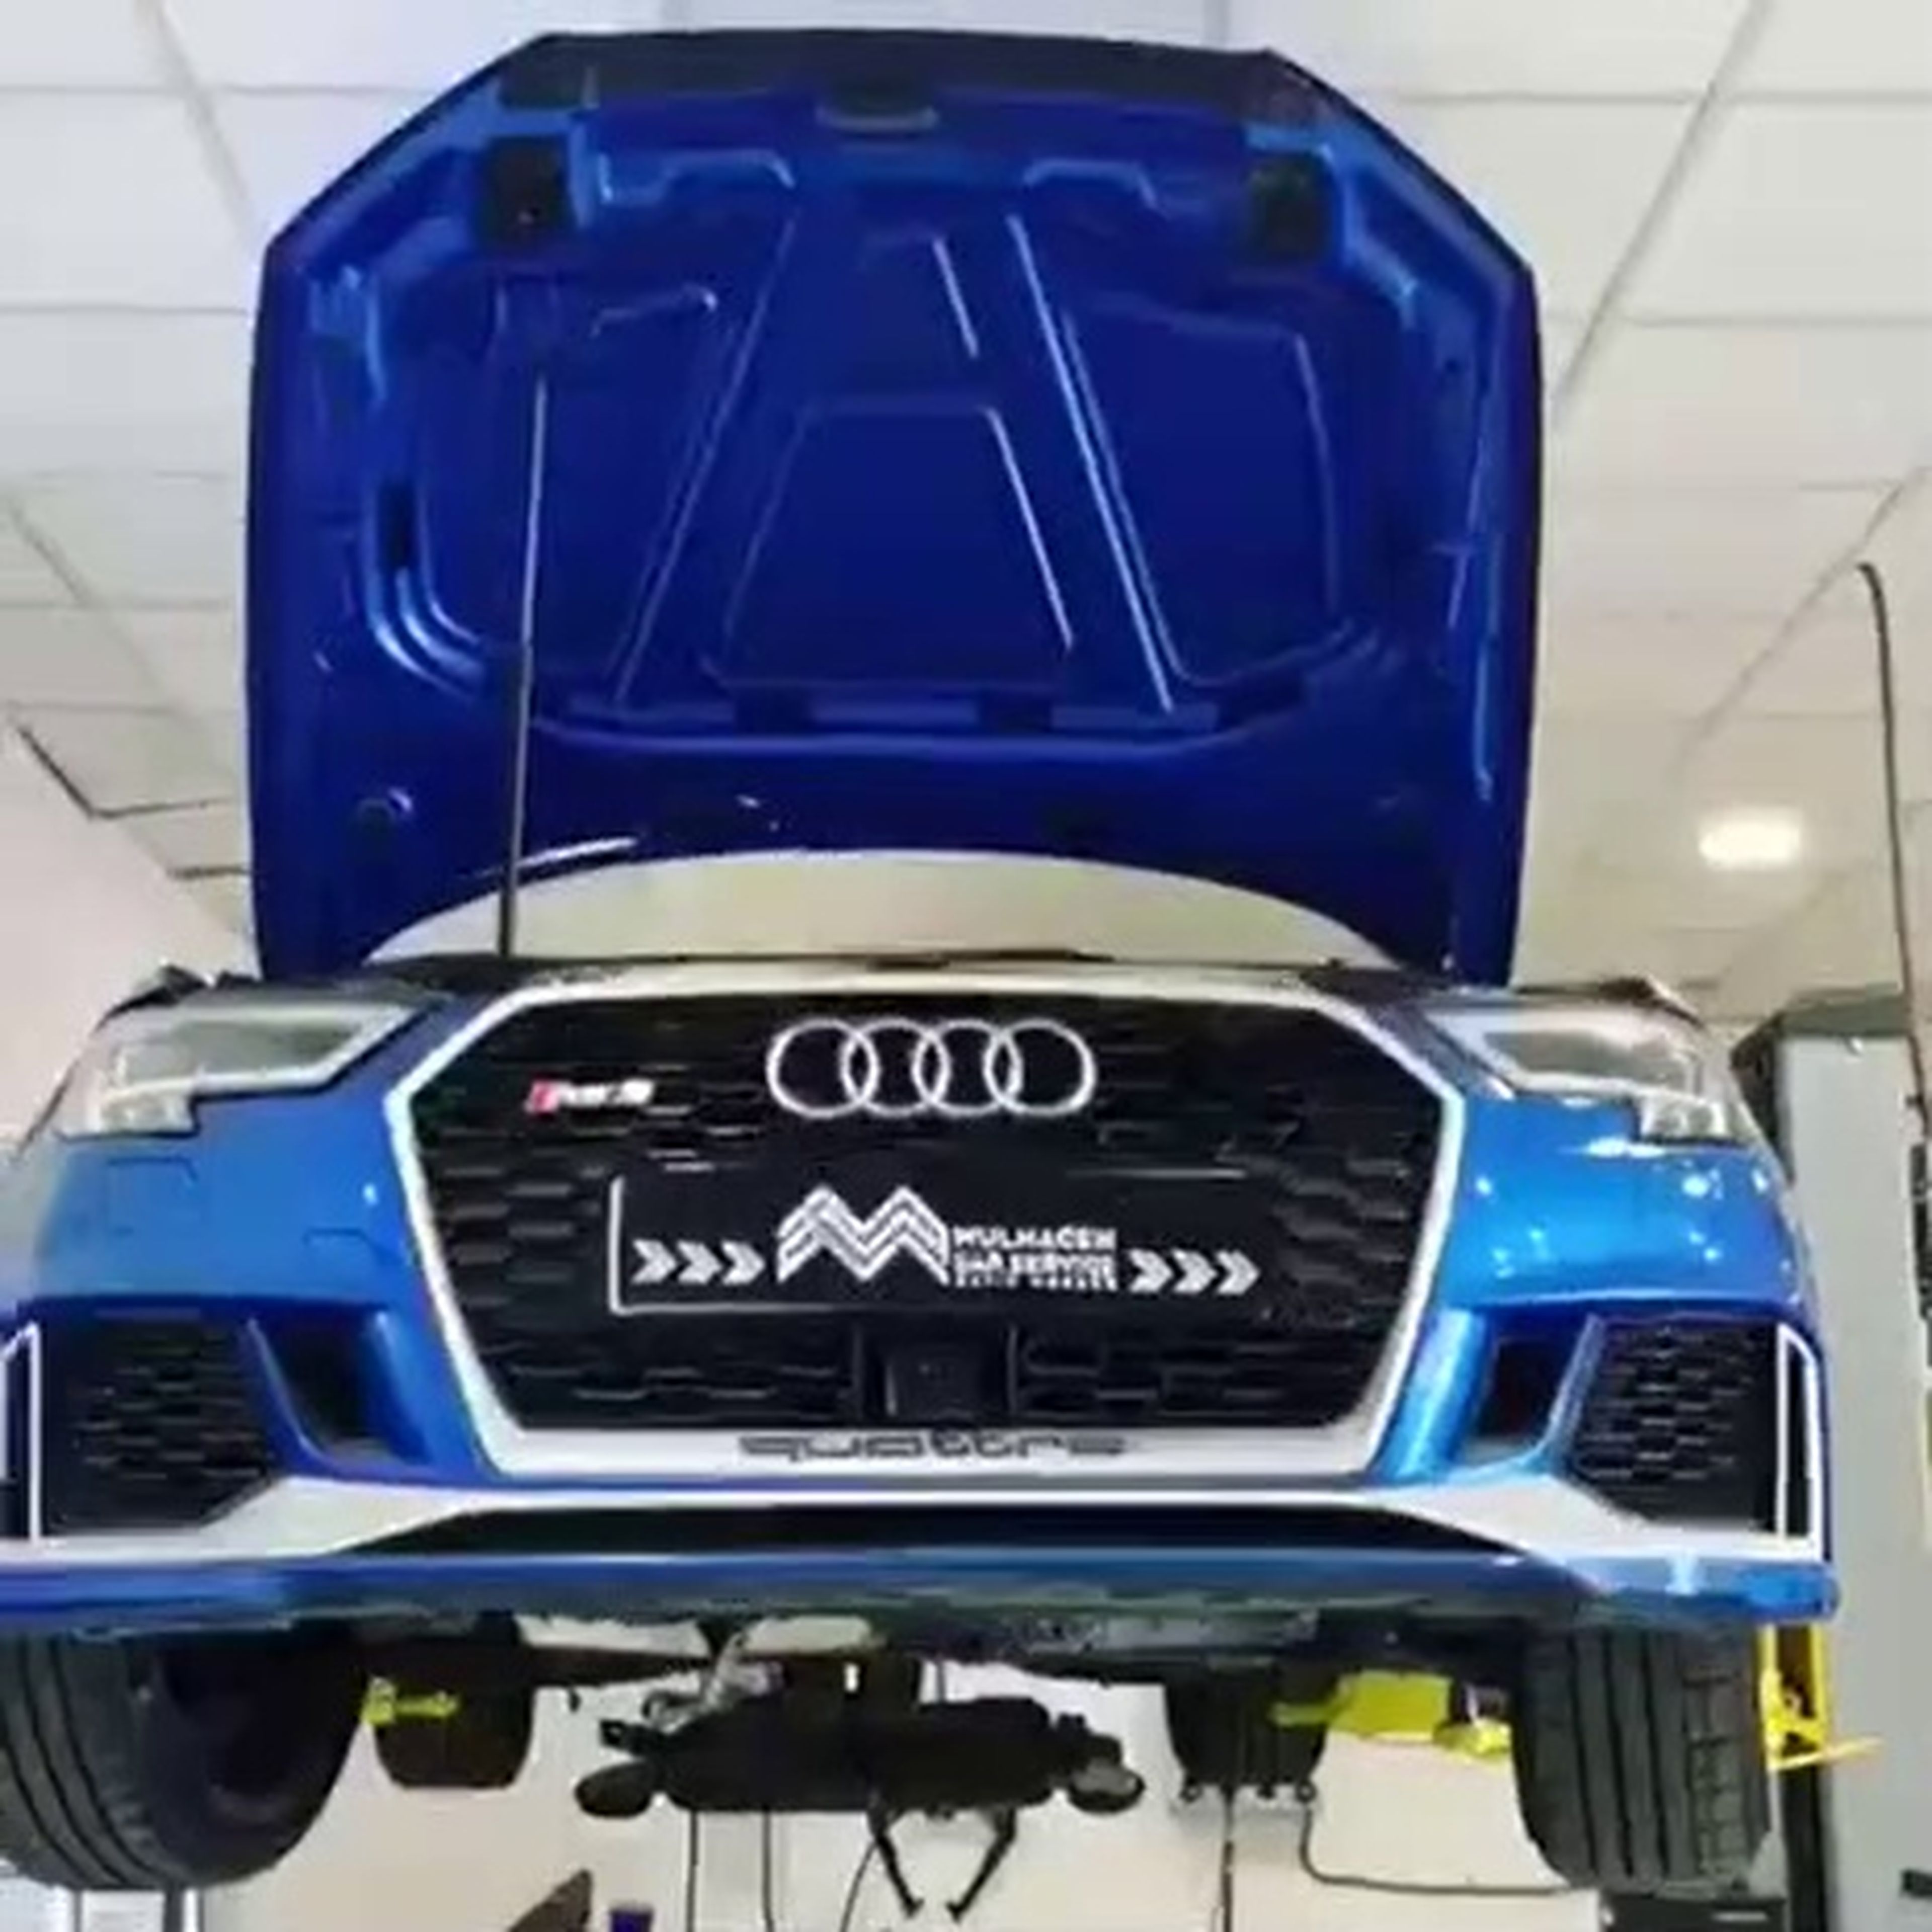 VÍDEO: Un Audi RS 6 Avant con el motor (literalmente) reventado